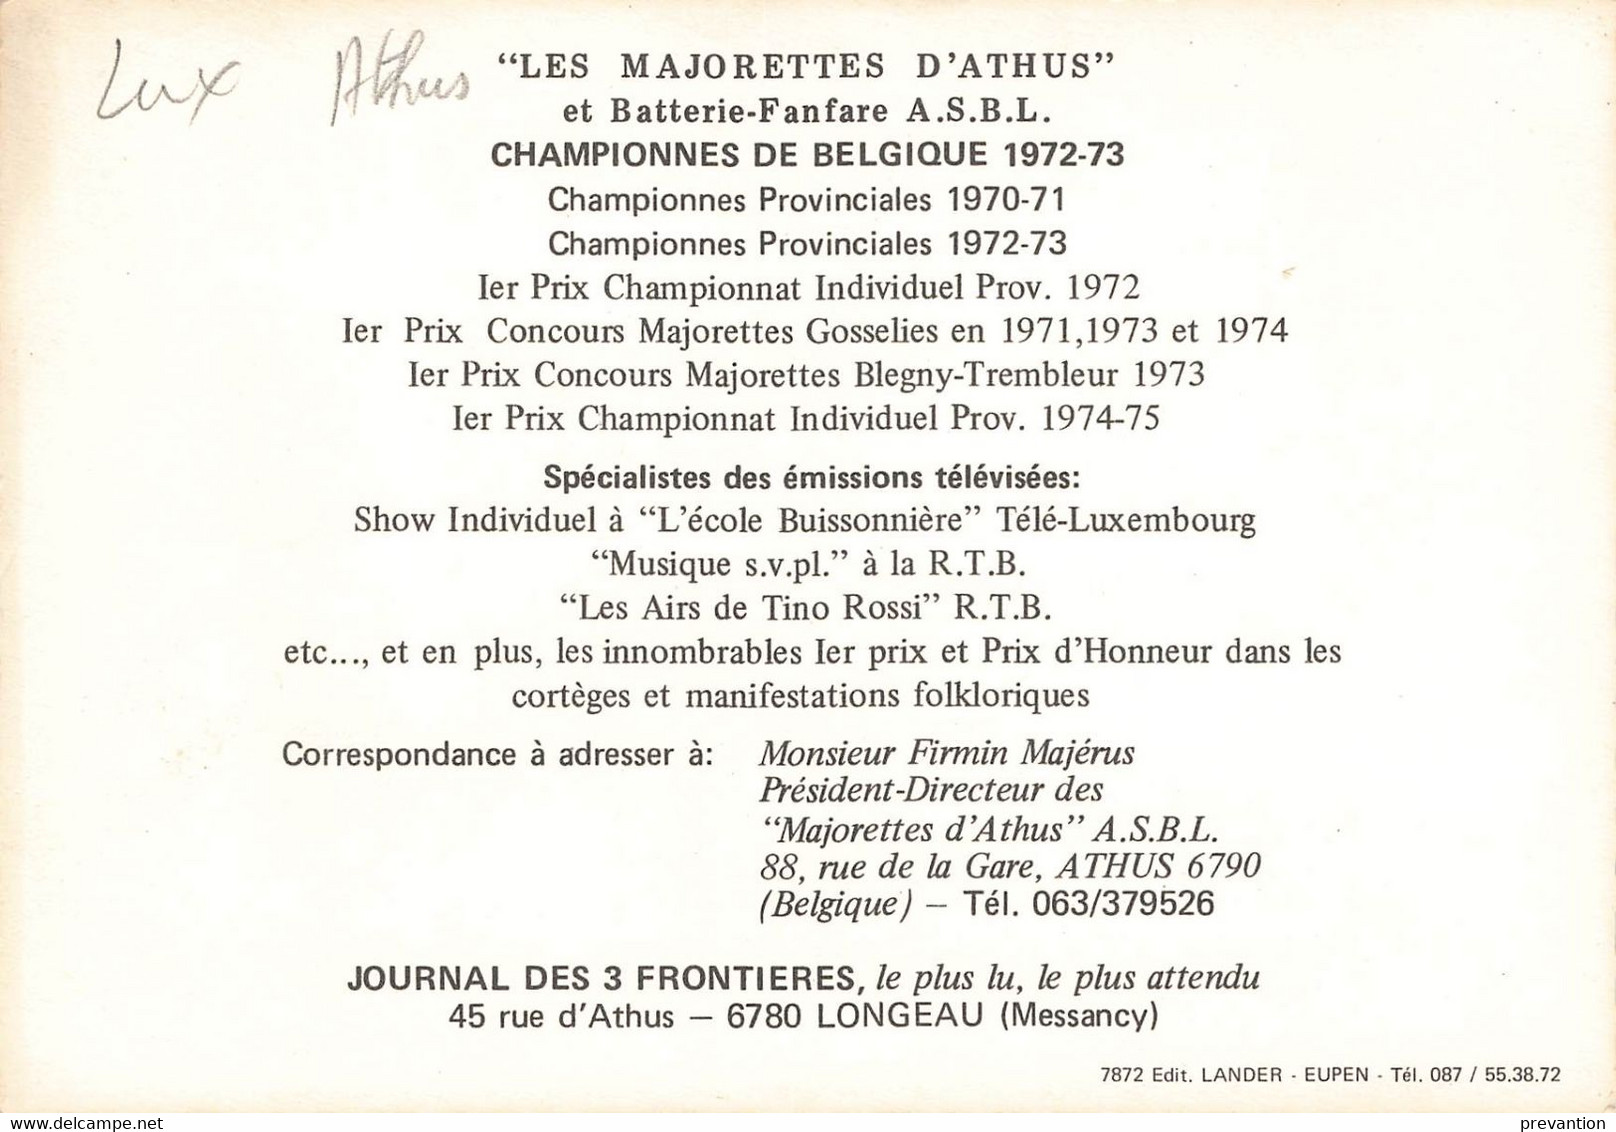 Les Majorettes D'ATHUS - Carte Colorée Avec Le Palmarès De Celle-ci Ainsi Que Son Président-Directeur - Aubange